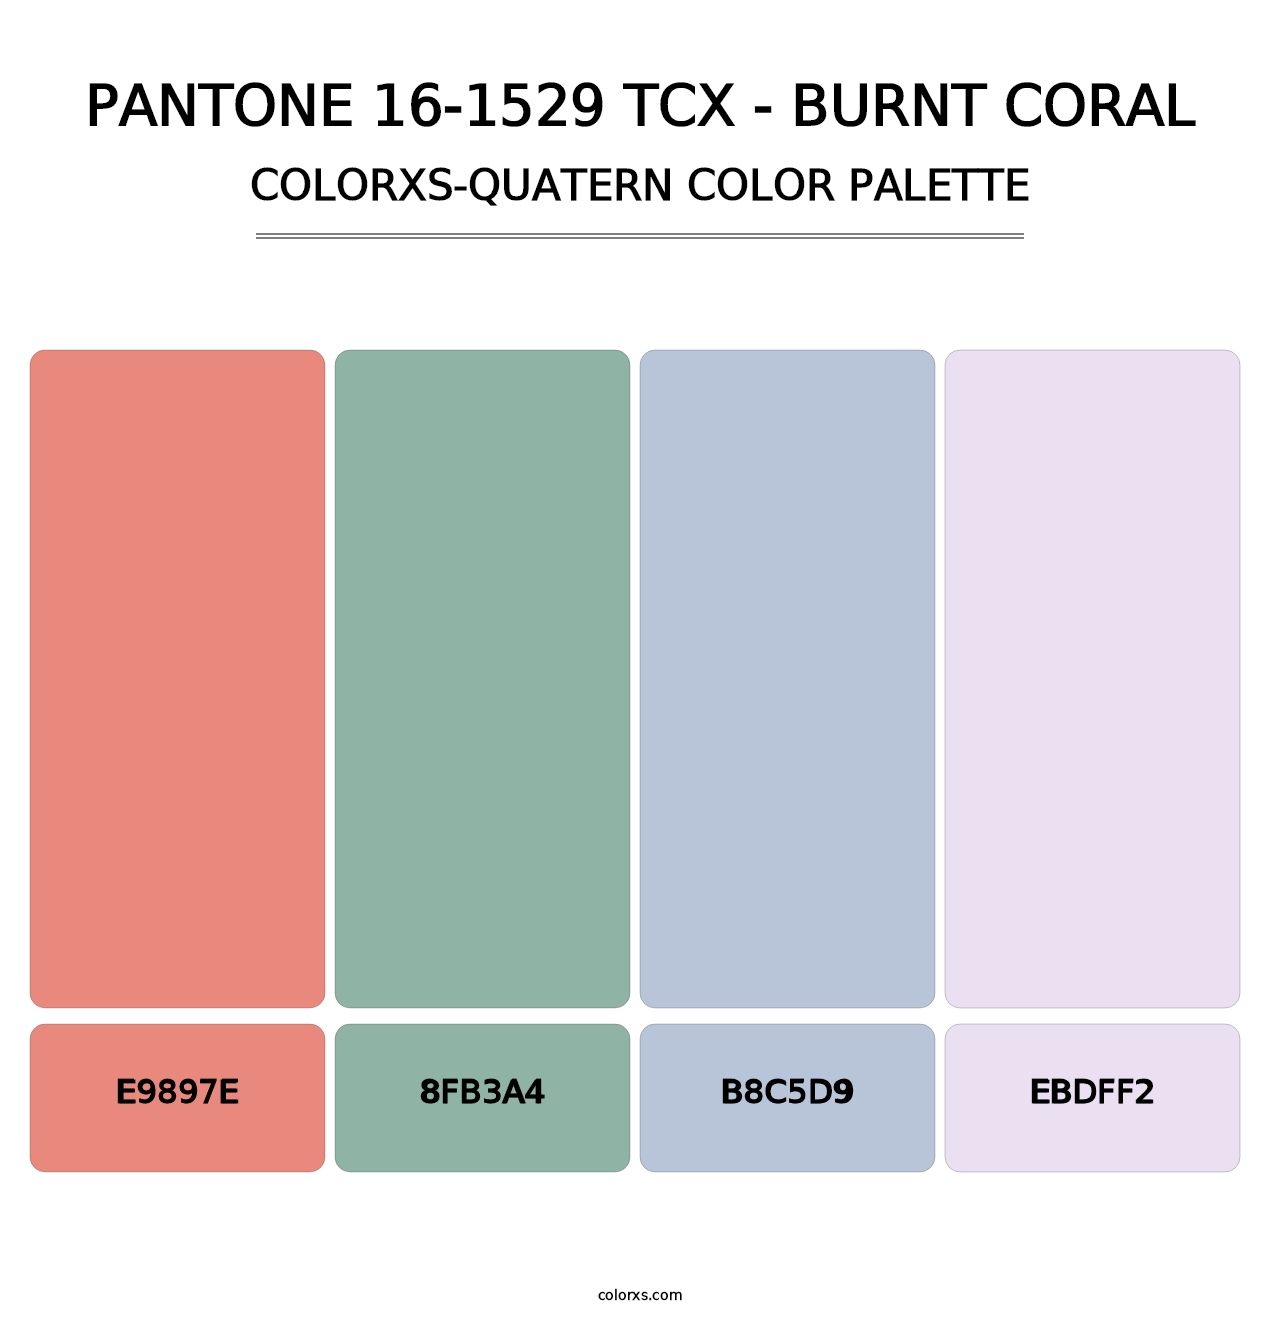 PANTONE 16-1529 TCX - Burnt Coral - Colorxs Quatern Palette